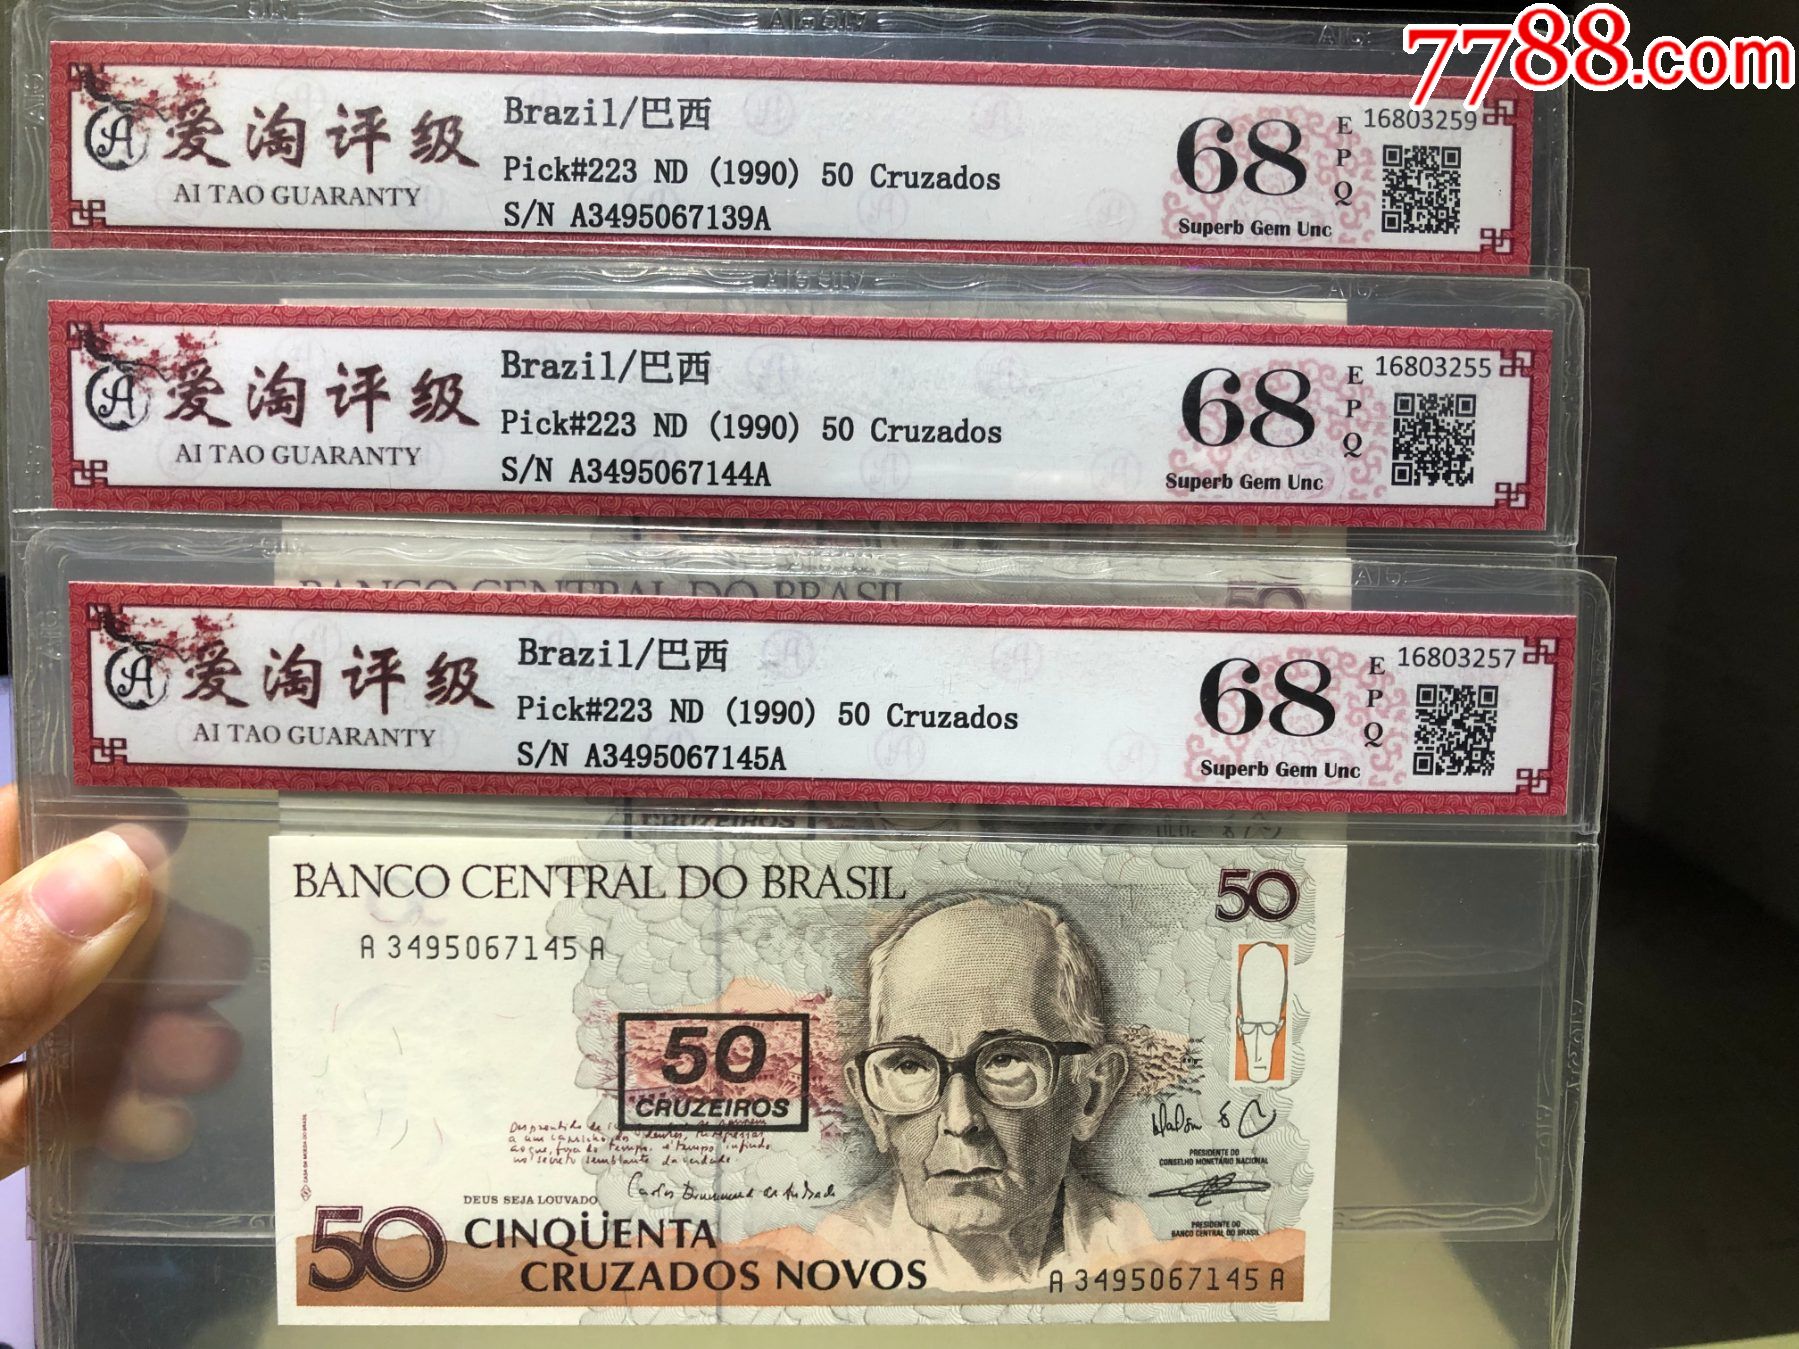 巴西旧版纸币图片-图库-五毛网